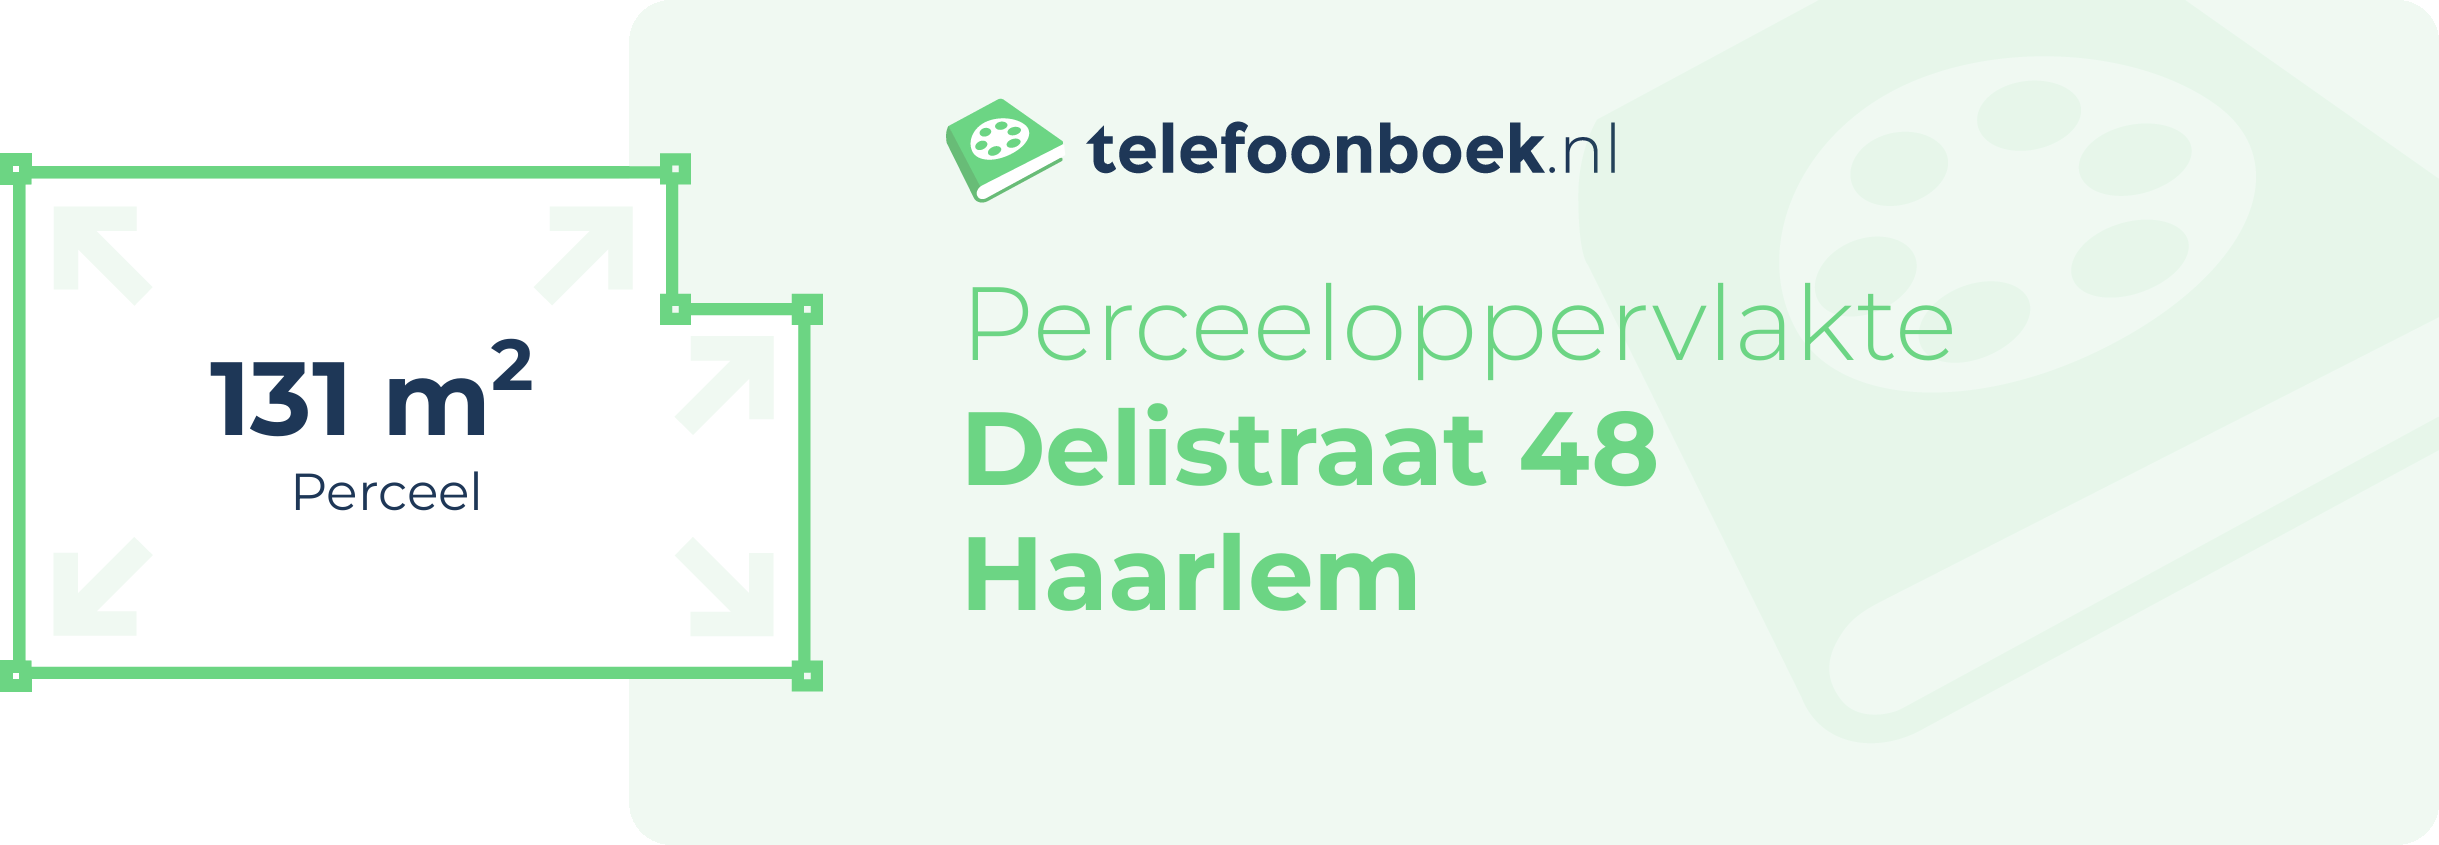 Perceeloppervlakte Delistraat 48 Haarlem